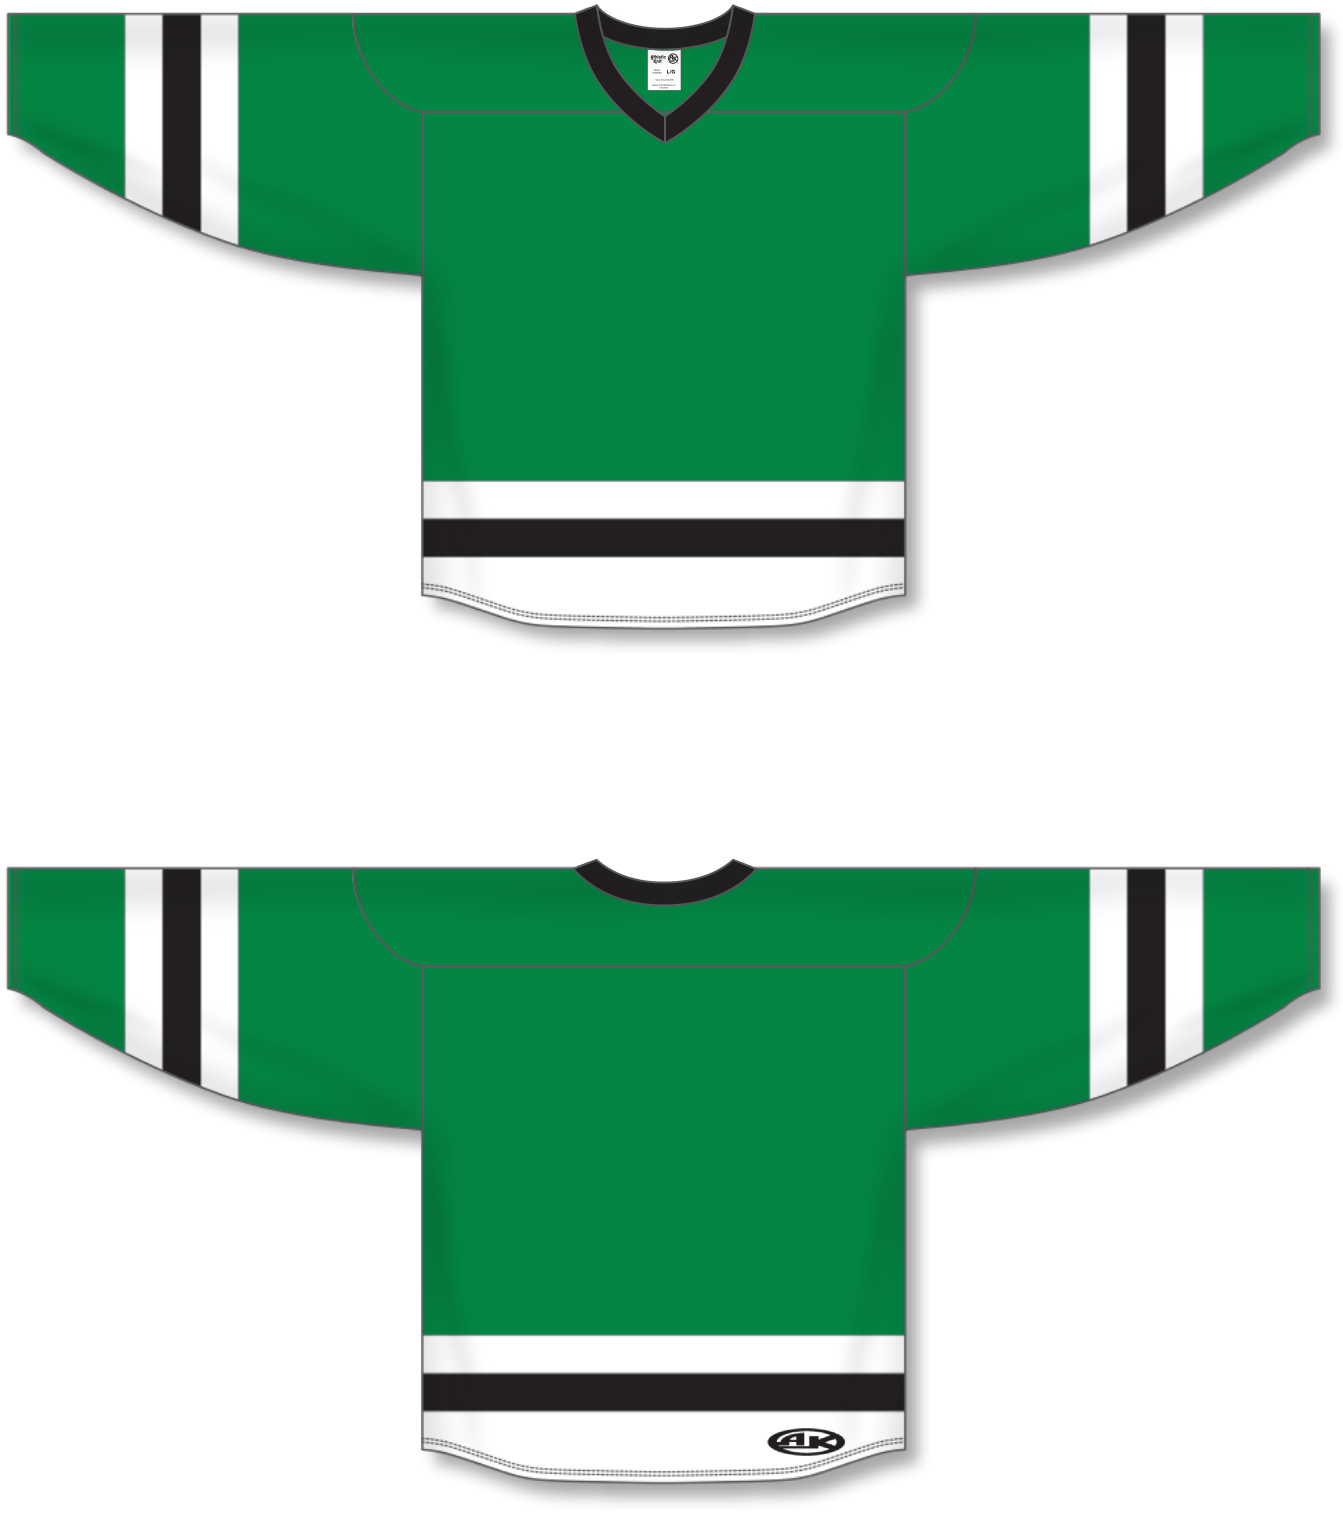 Blank Kelly Green Hockey Jersey Custom Team Logo - Buy Hockey Jersey,Blank  Hockey Jersey,Kelly Green Hockey Jersey Product on